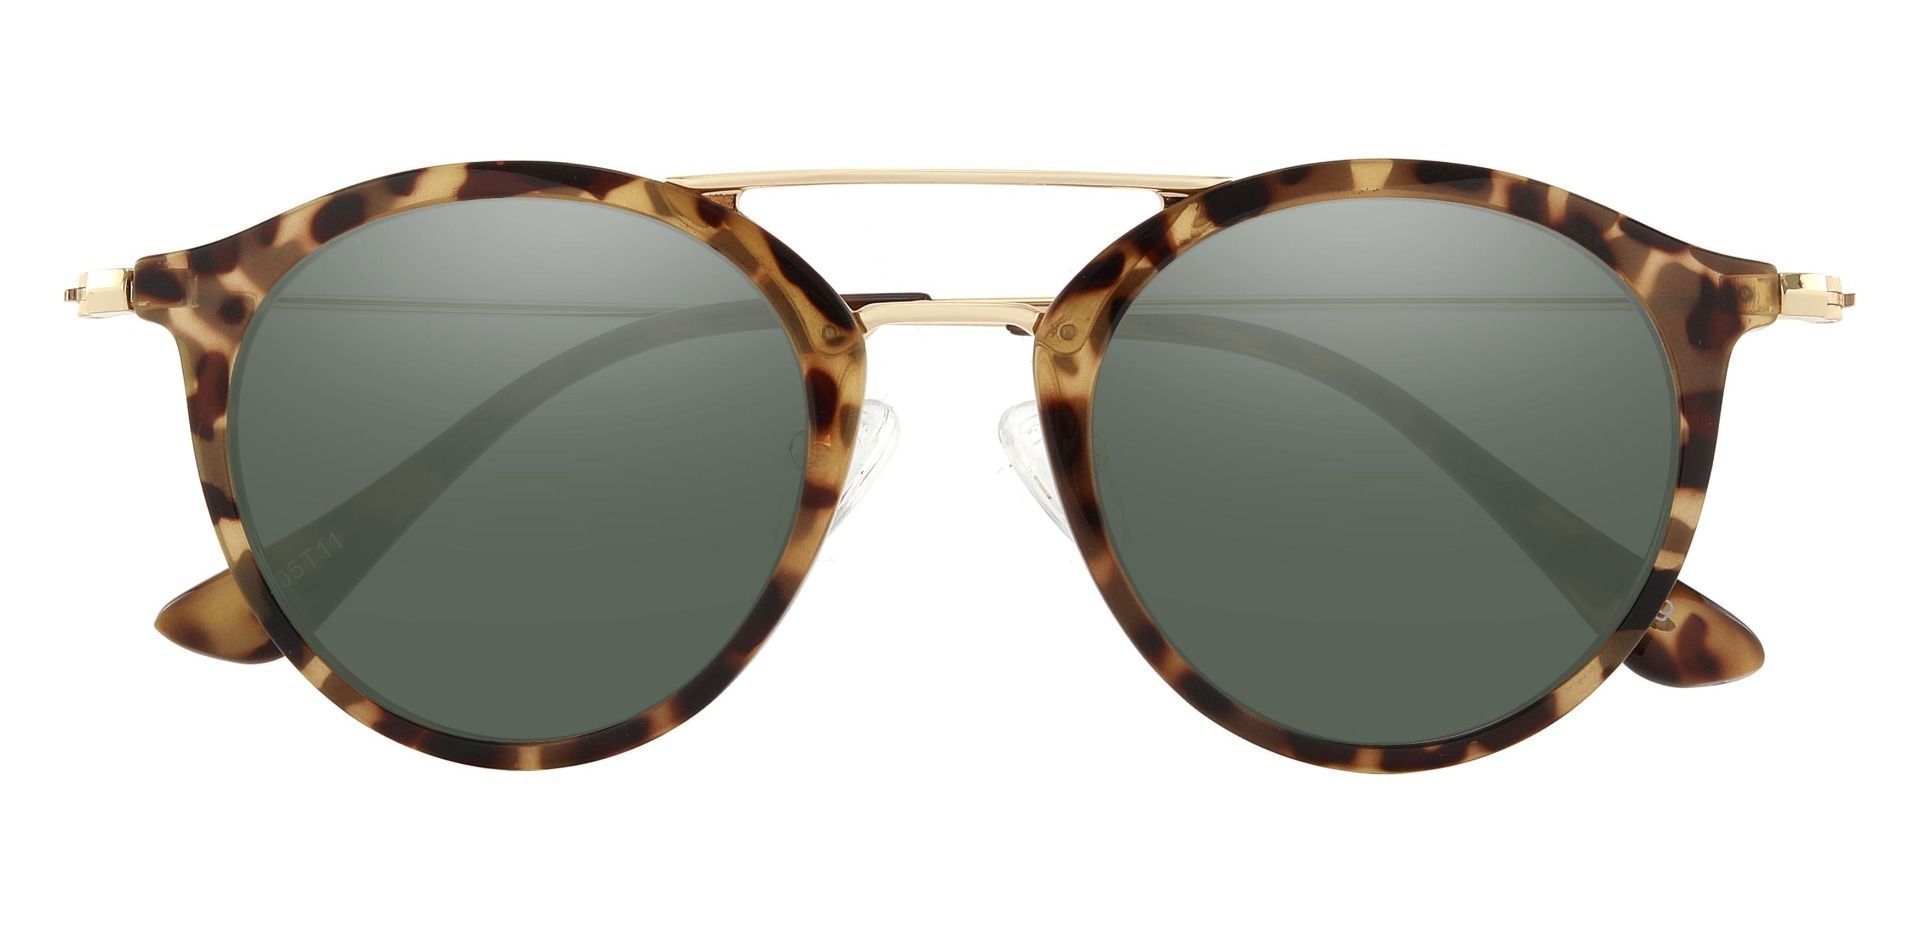 Malden Aviator Prescription Sunglasses - Tortoise Frame With Green Lenses